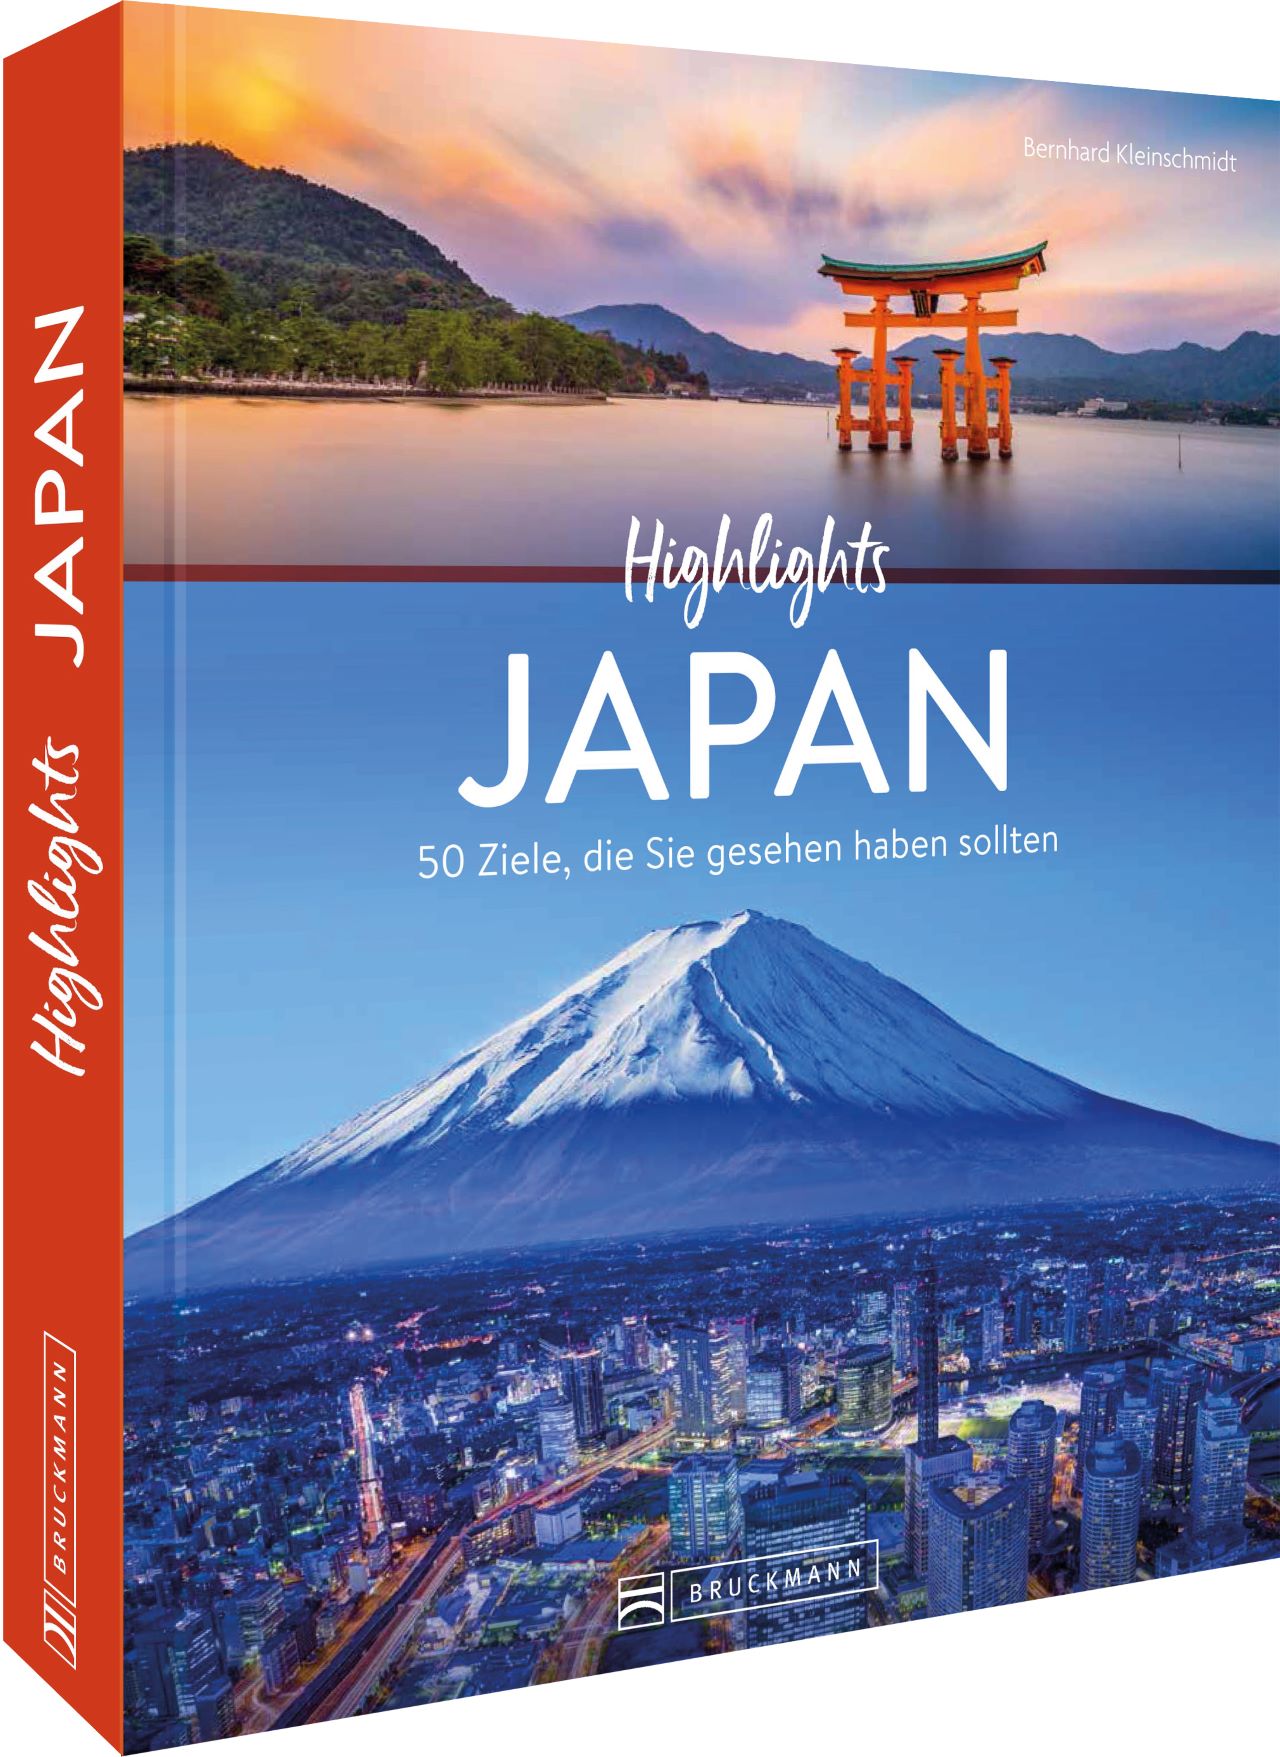 Highlights Japan - Die 50 Ziele, die Sie gesehen haben sollten (Kleinschmidt, Bernhard)